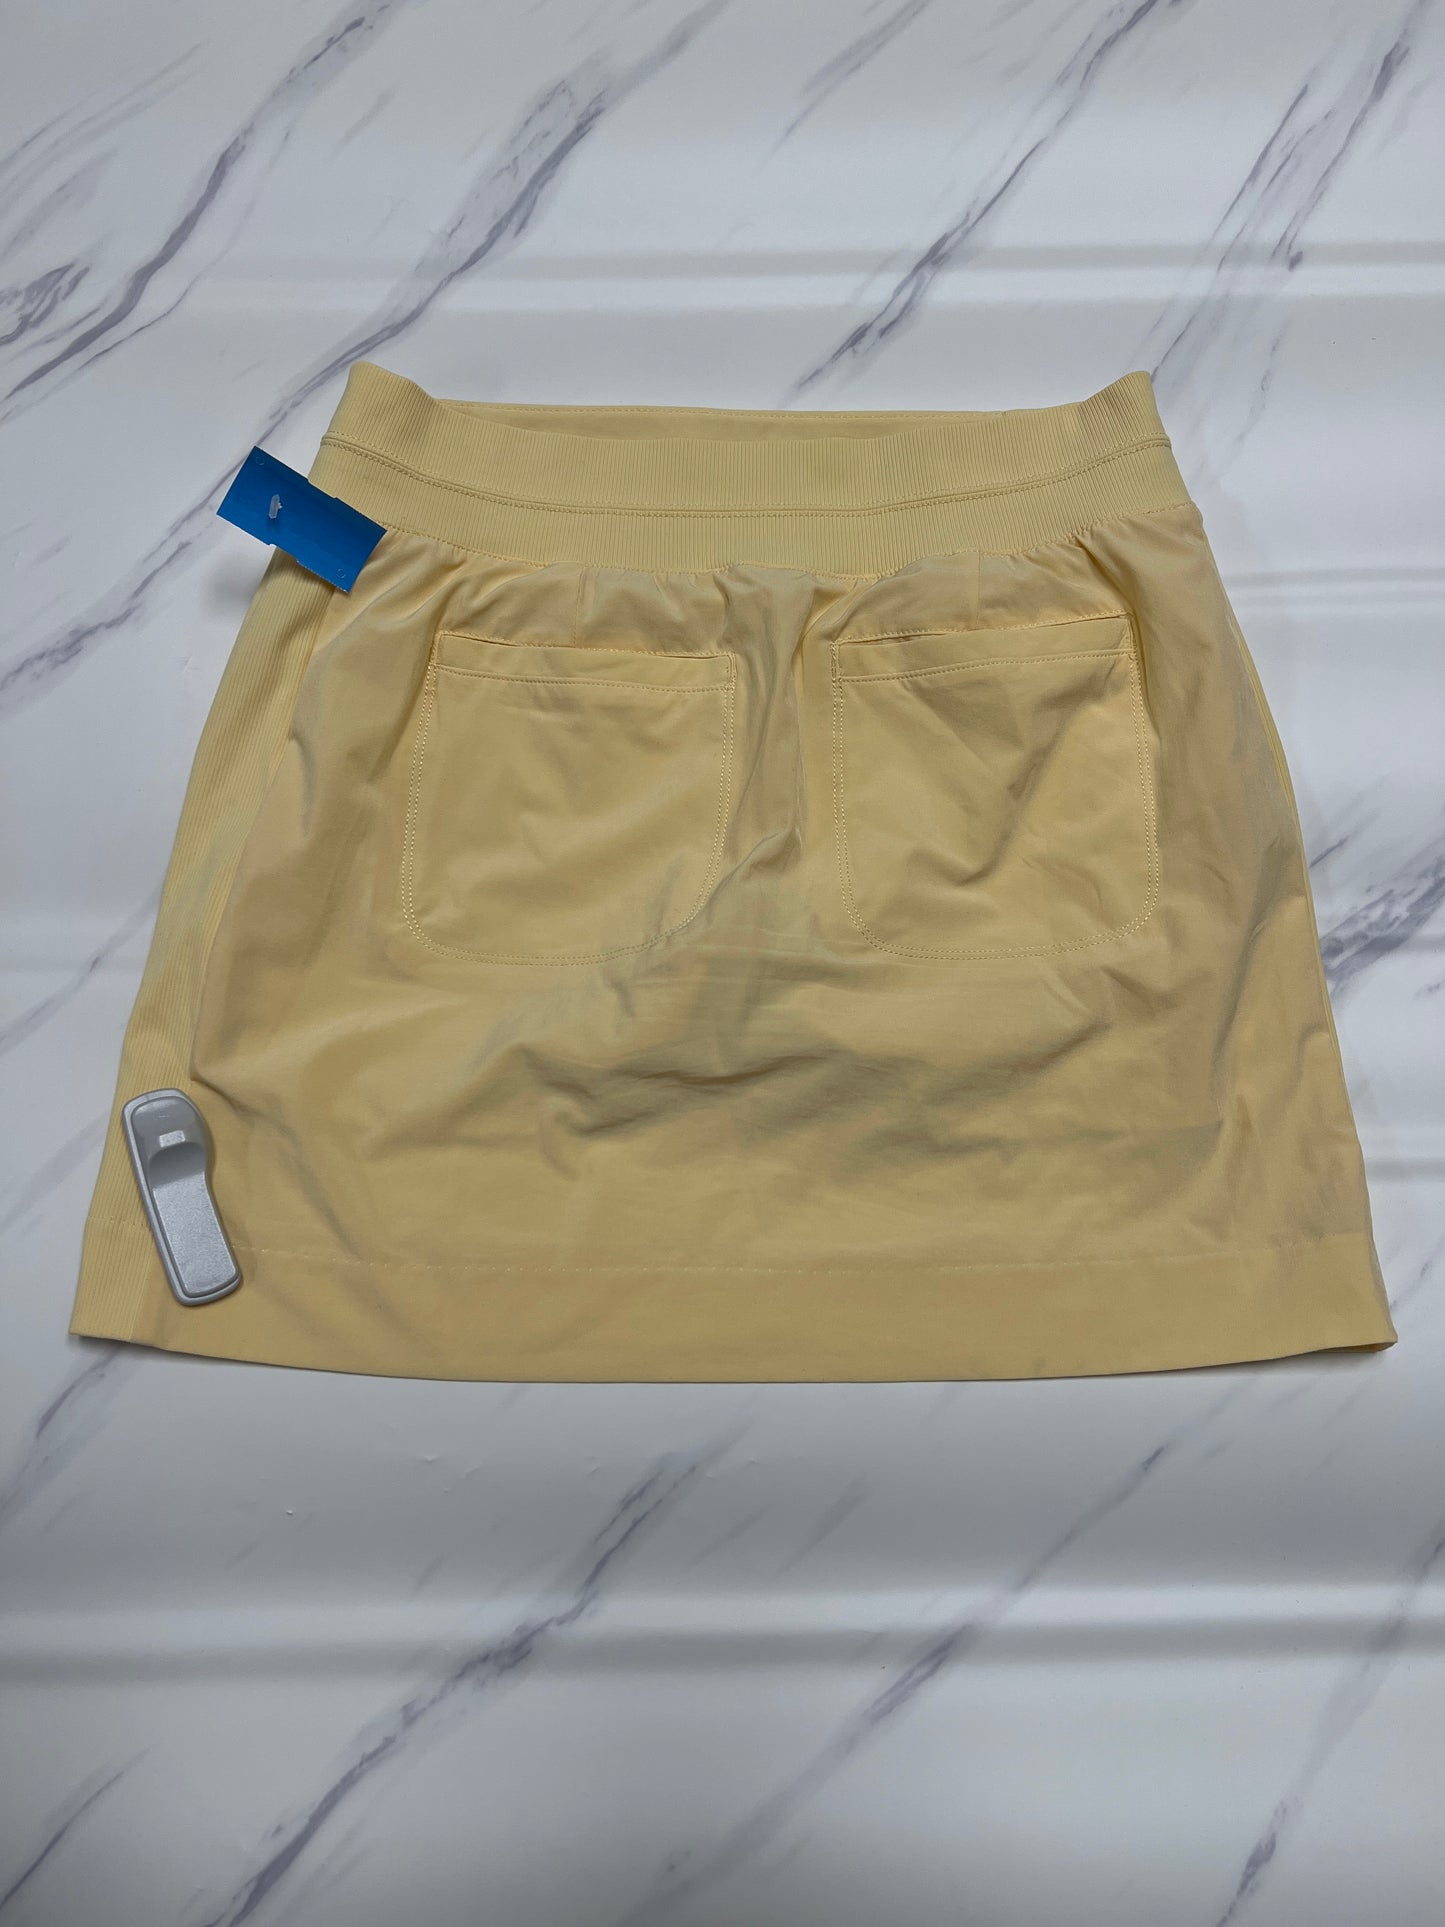 Athletic Skirt Skort By Athleta  Size: 6